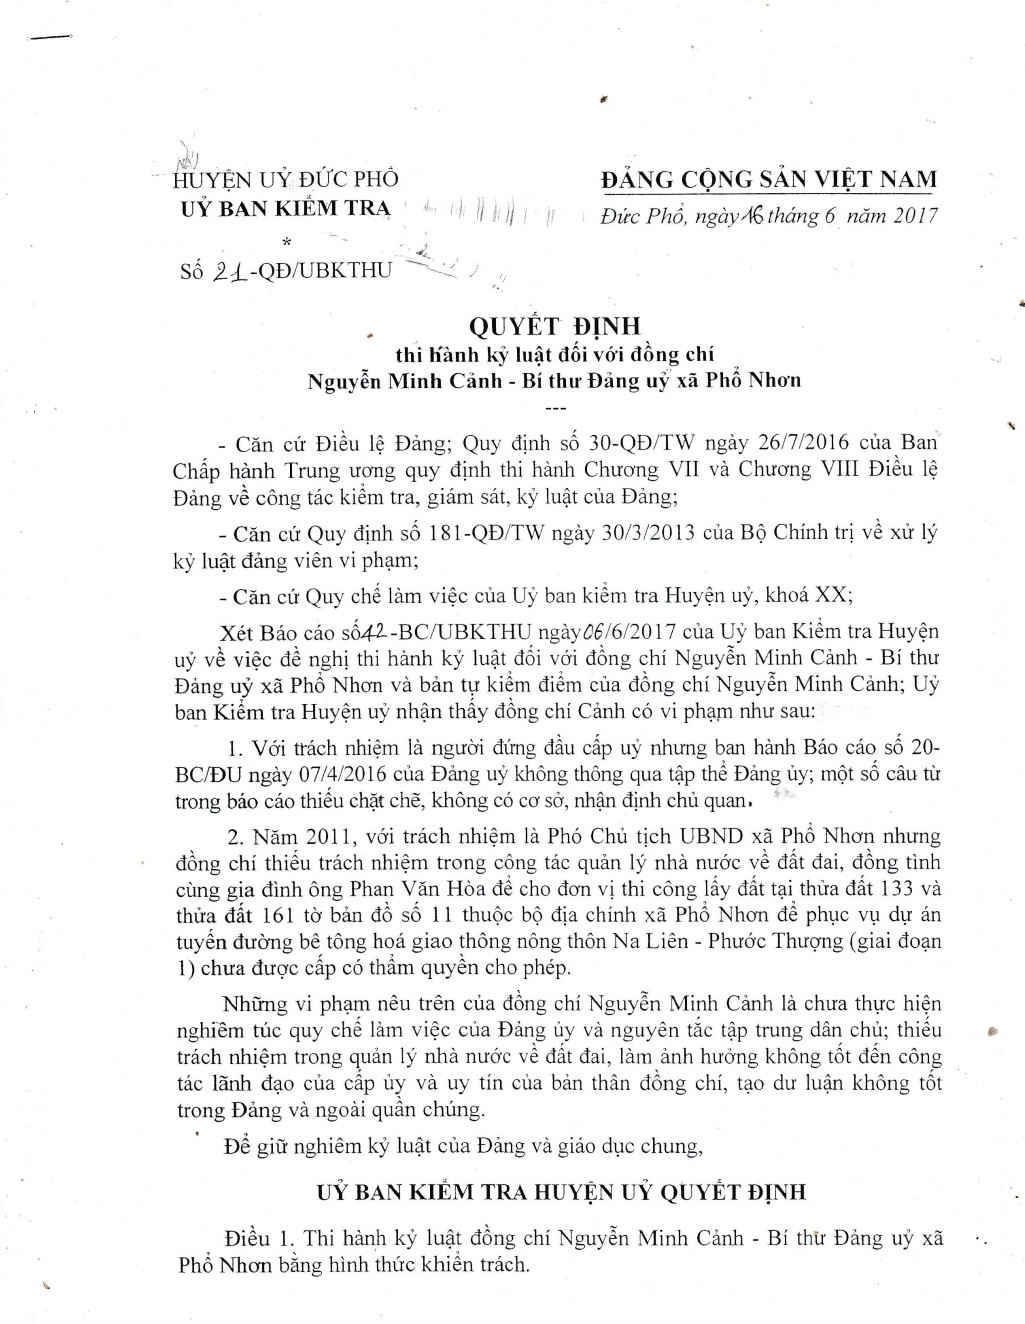 Quyết định thi hành kỷ luật của ông Nguyễn Minh Cảnh, Bí thư Đảng ủy xã Phổ Nhơn